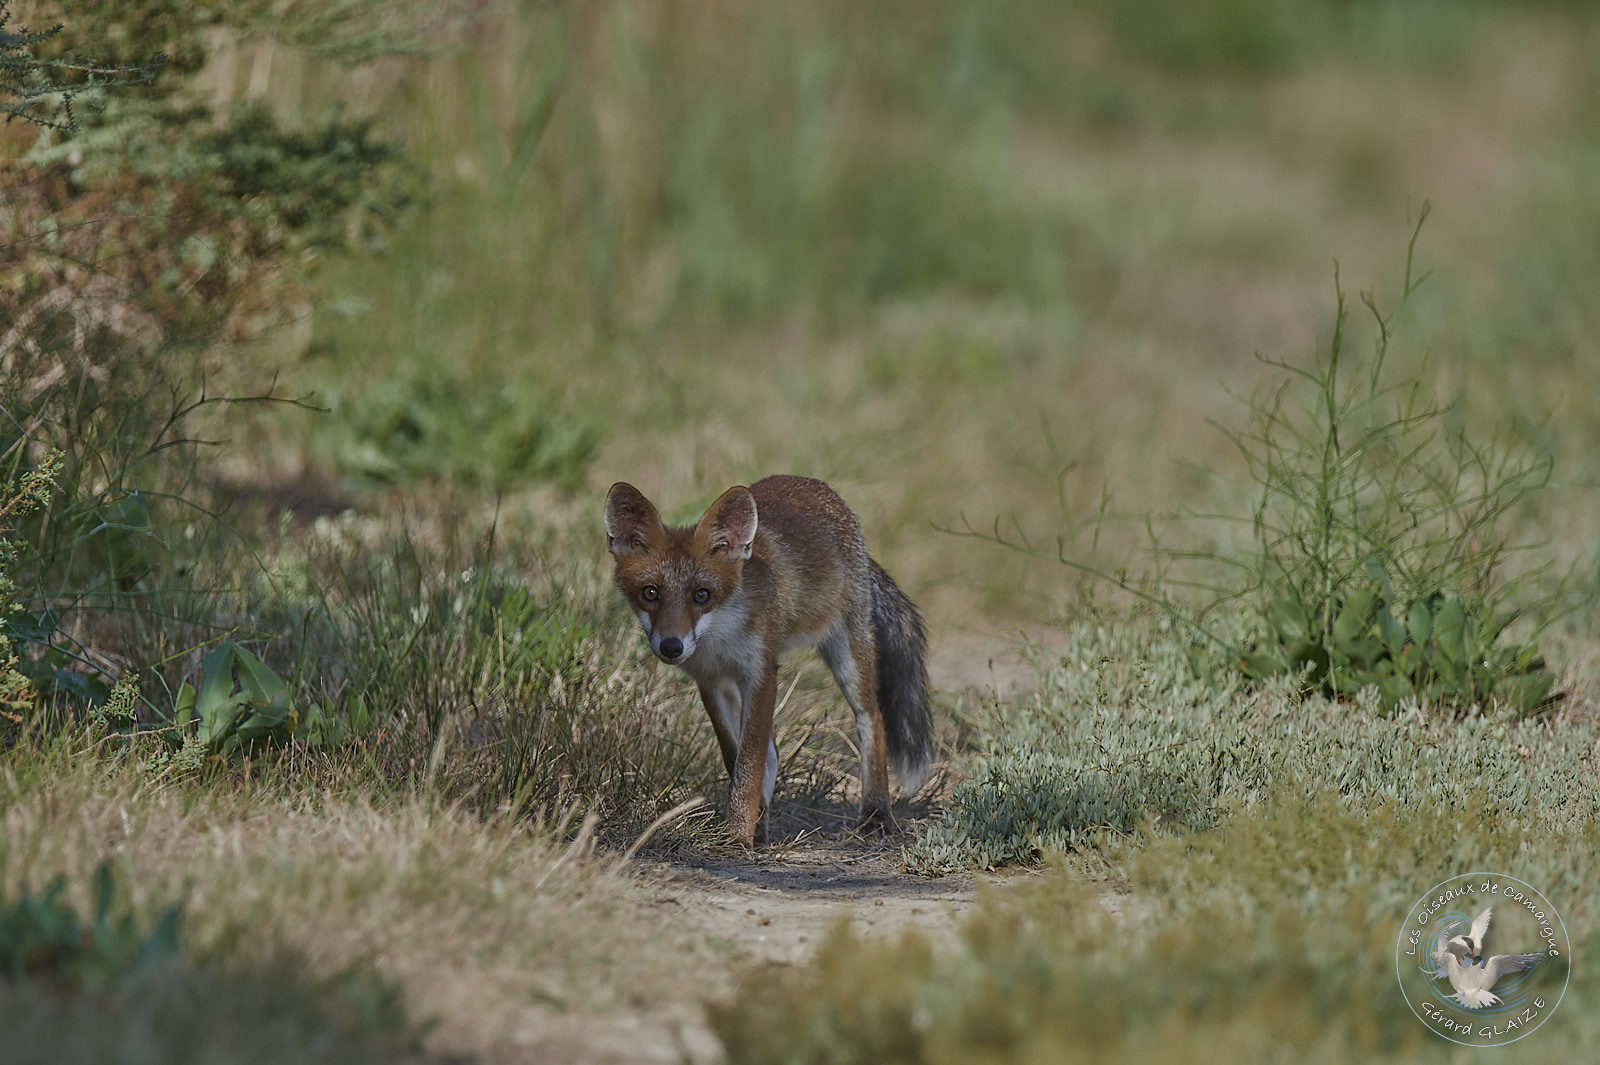 Renard roux - Red fox